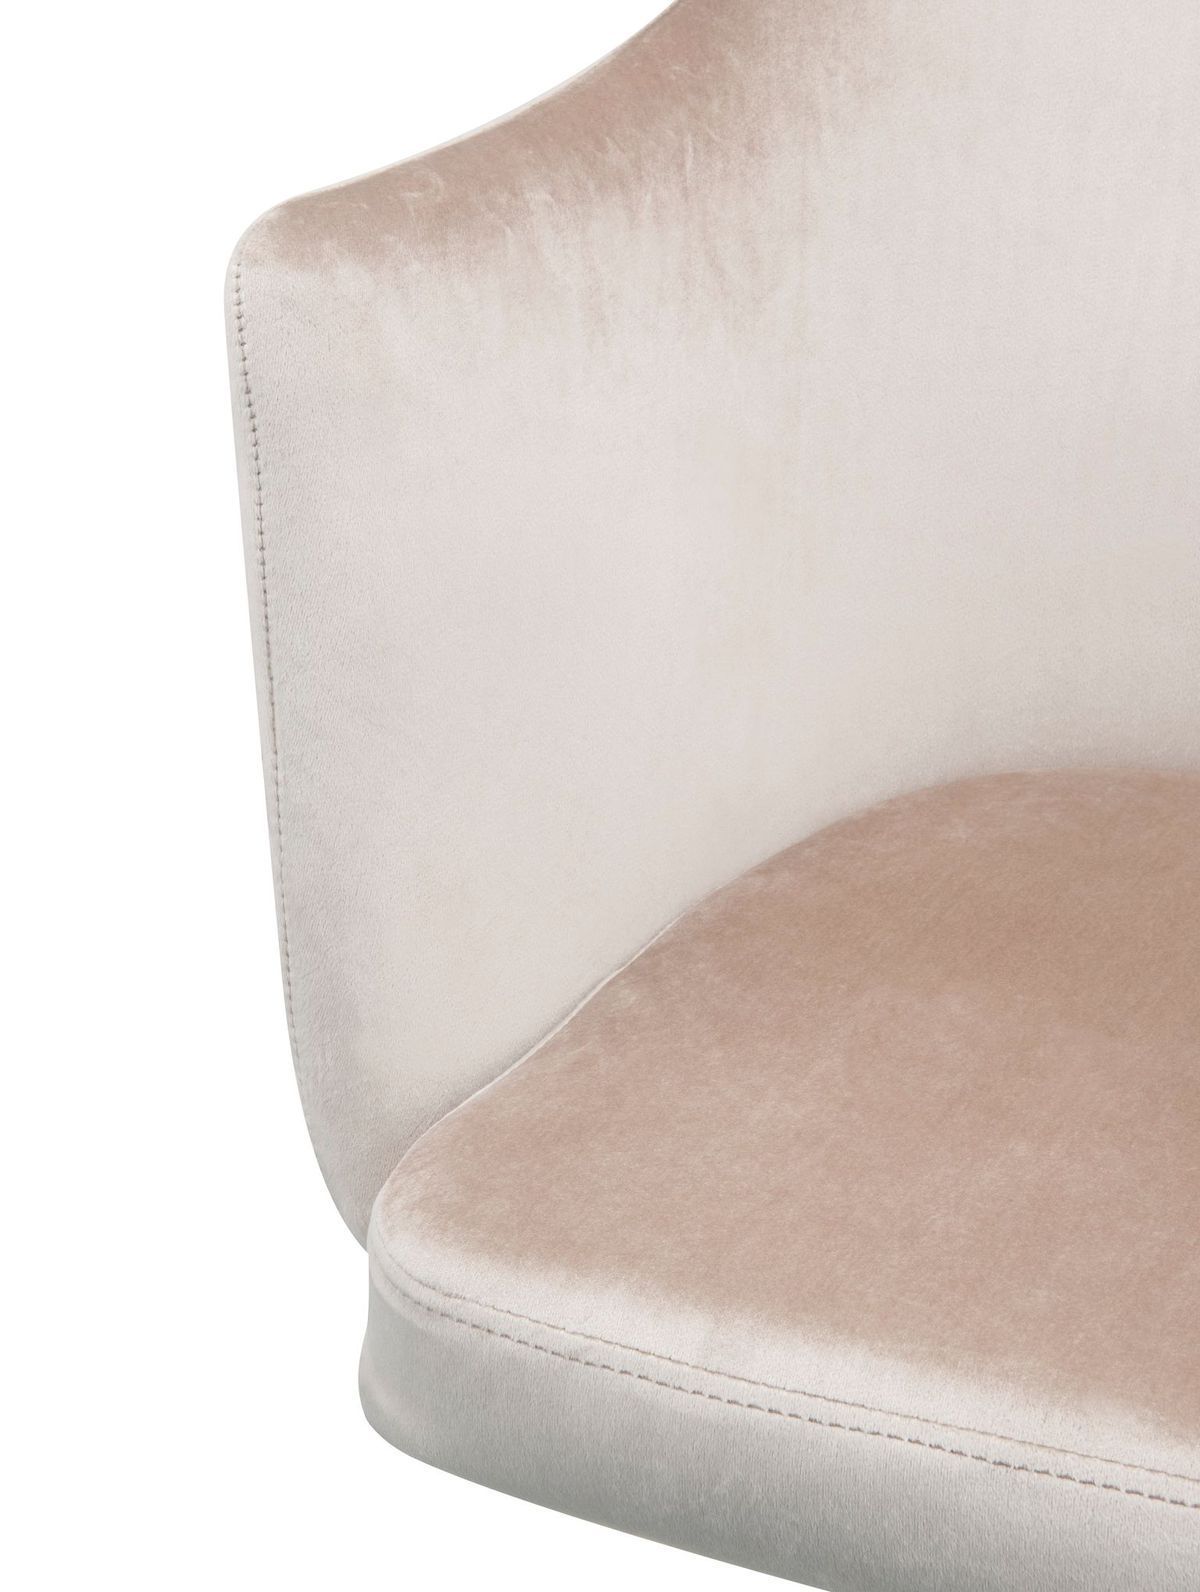 ACME Cosgair Office Chair in Champagne Velvet & Chrome 92506